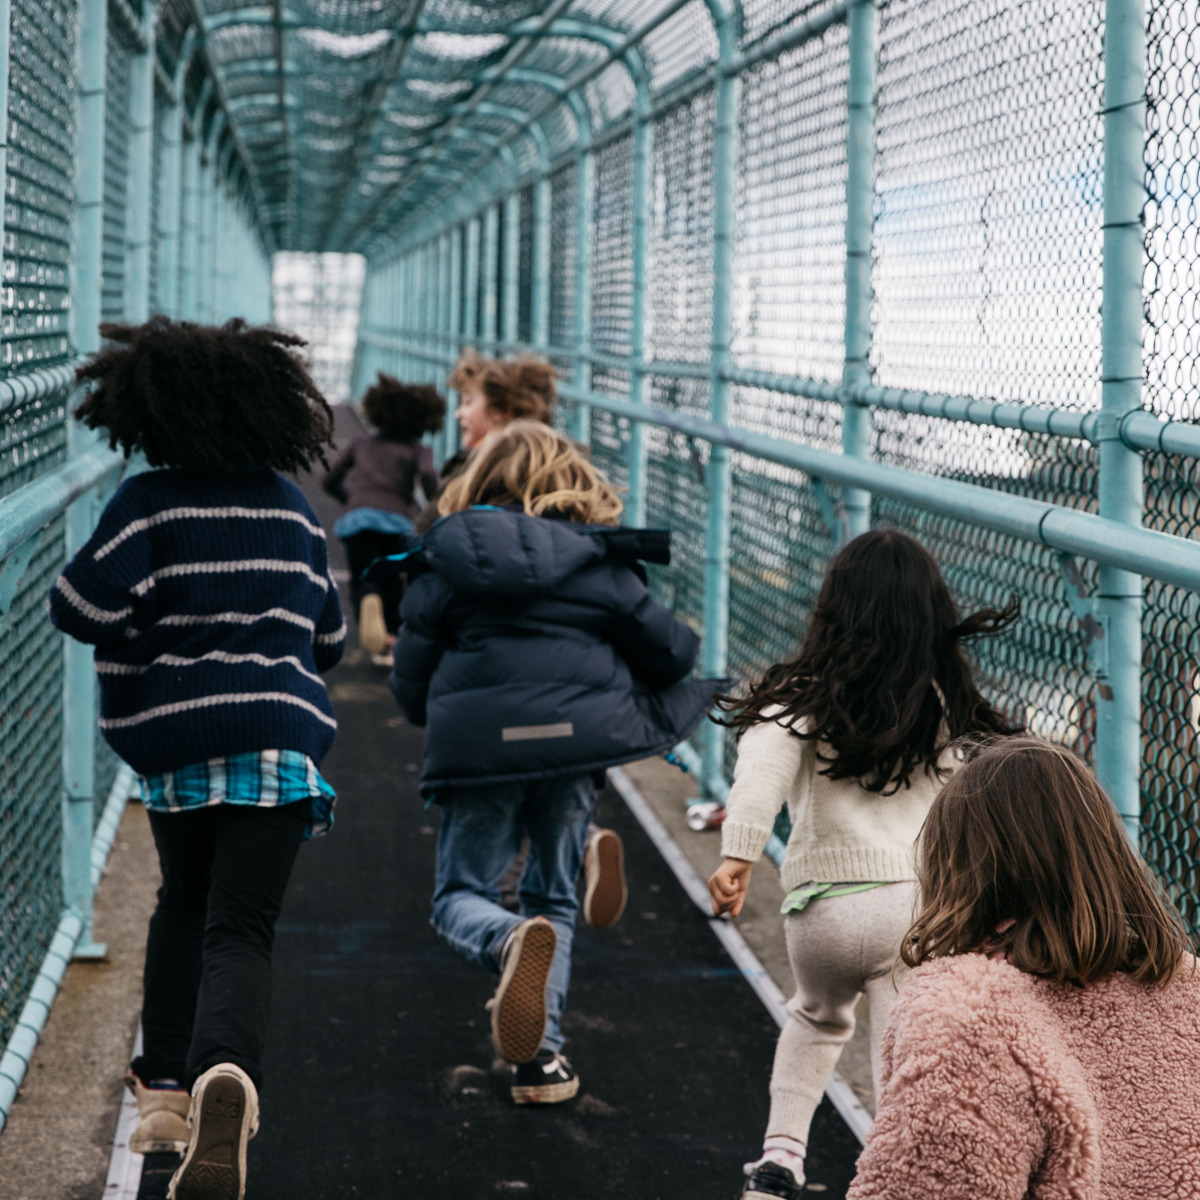 Children running across a bridge